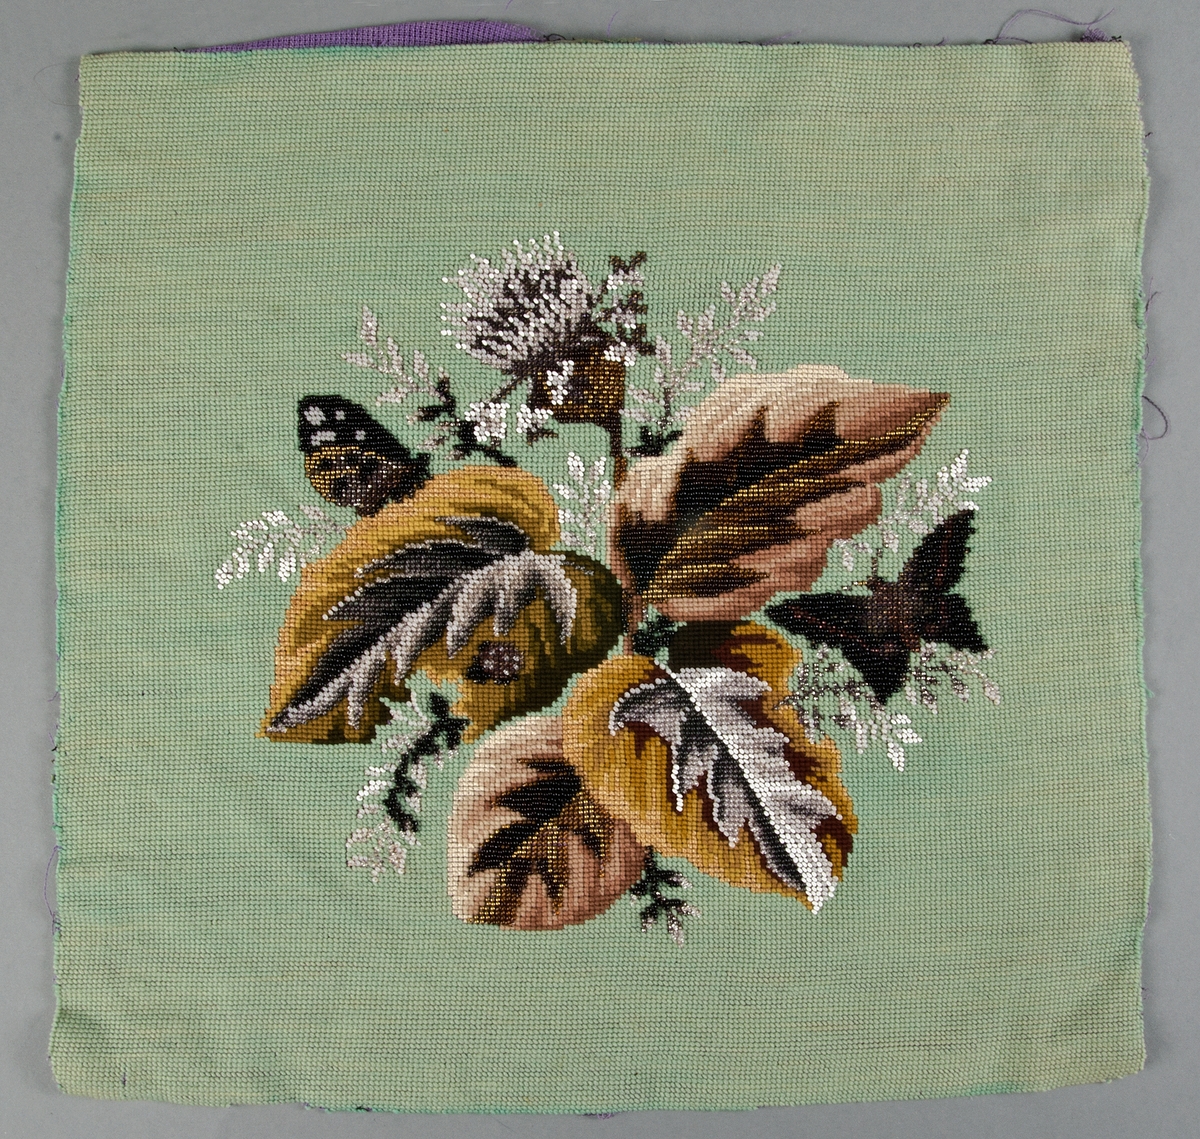 Korsstygnsbroderi i ullgarn, silke och pärlbroderi på lila stramalj. Vitt, svart, grått, gult och brunt samt mässings- och stålpärlor. Föreställande blad, blommor, och en fjäril.